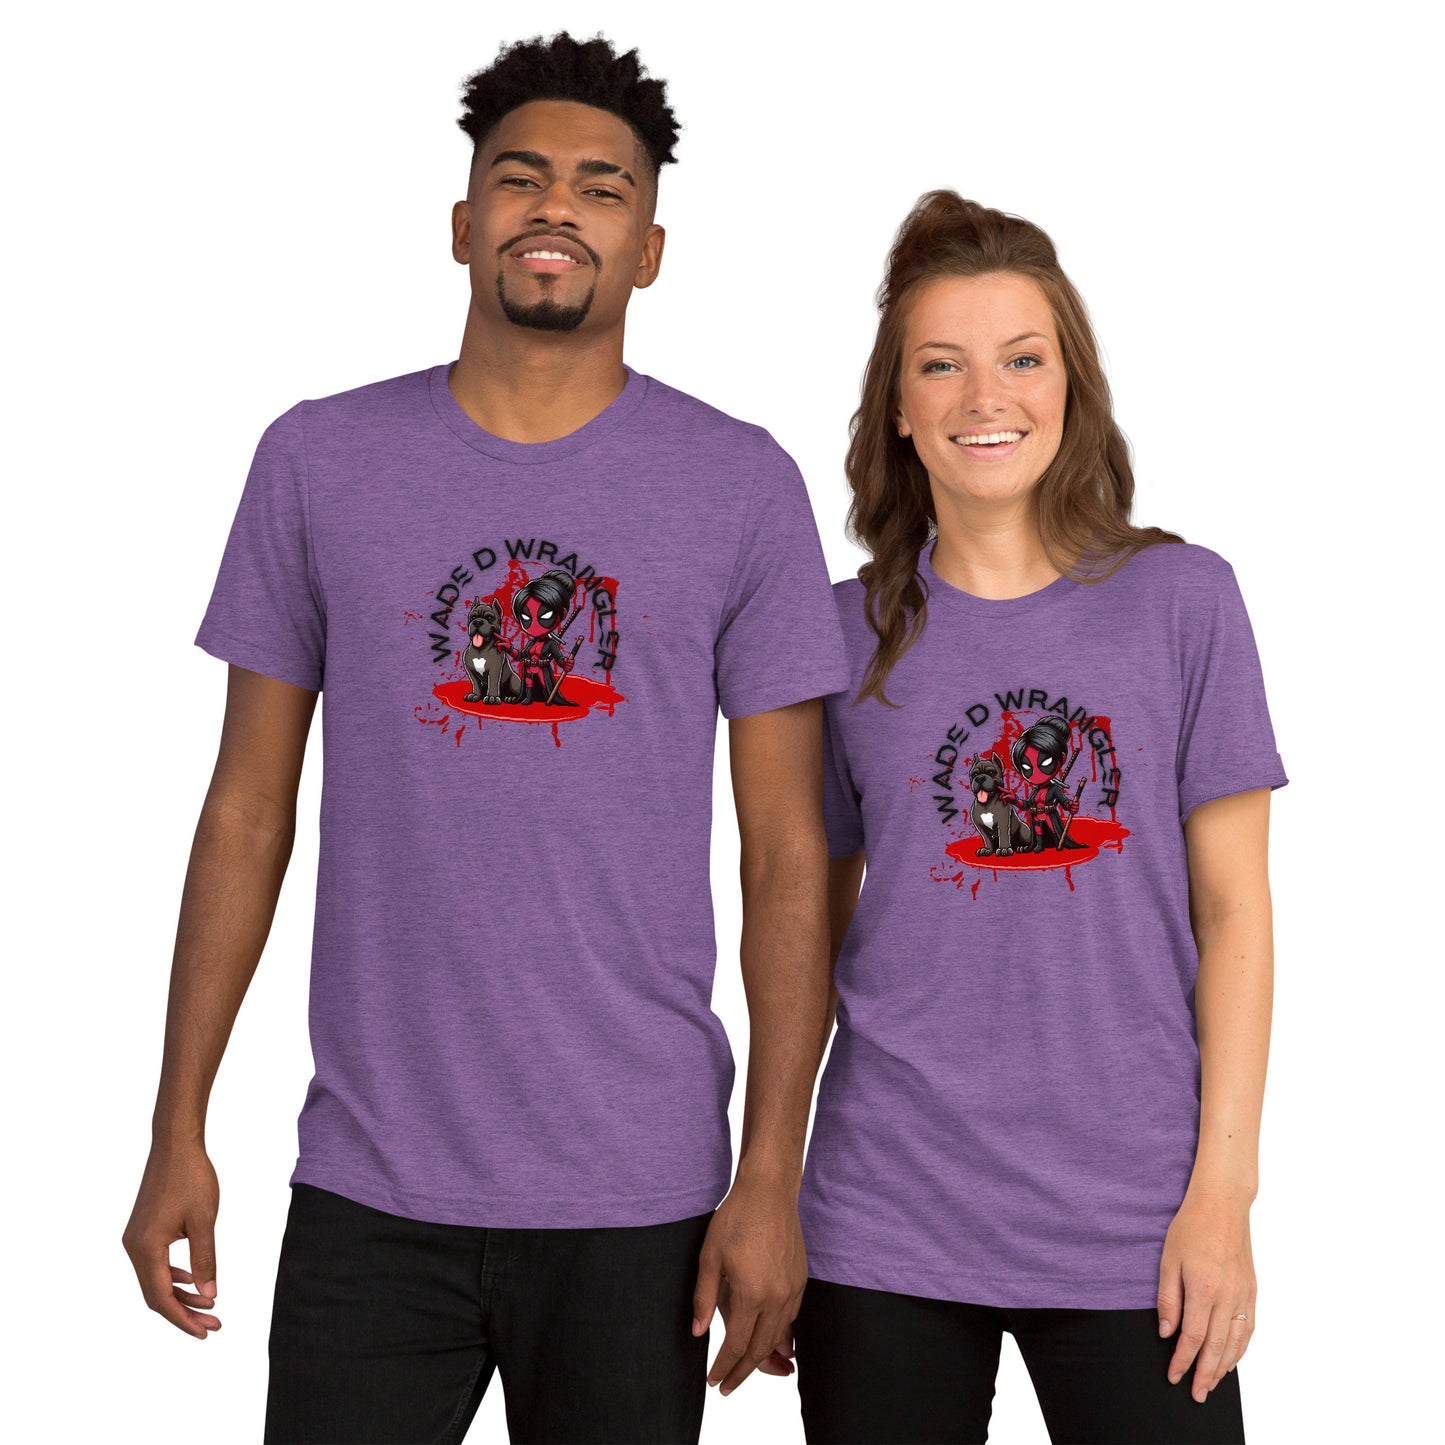 a man and a woman wearing purple shirts